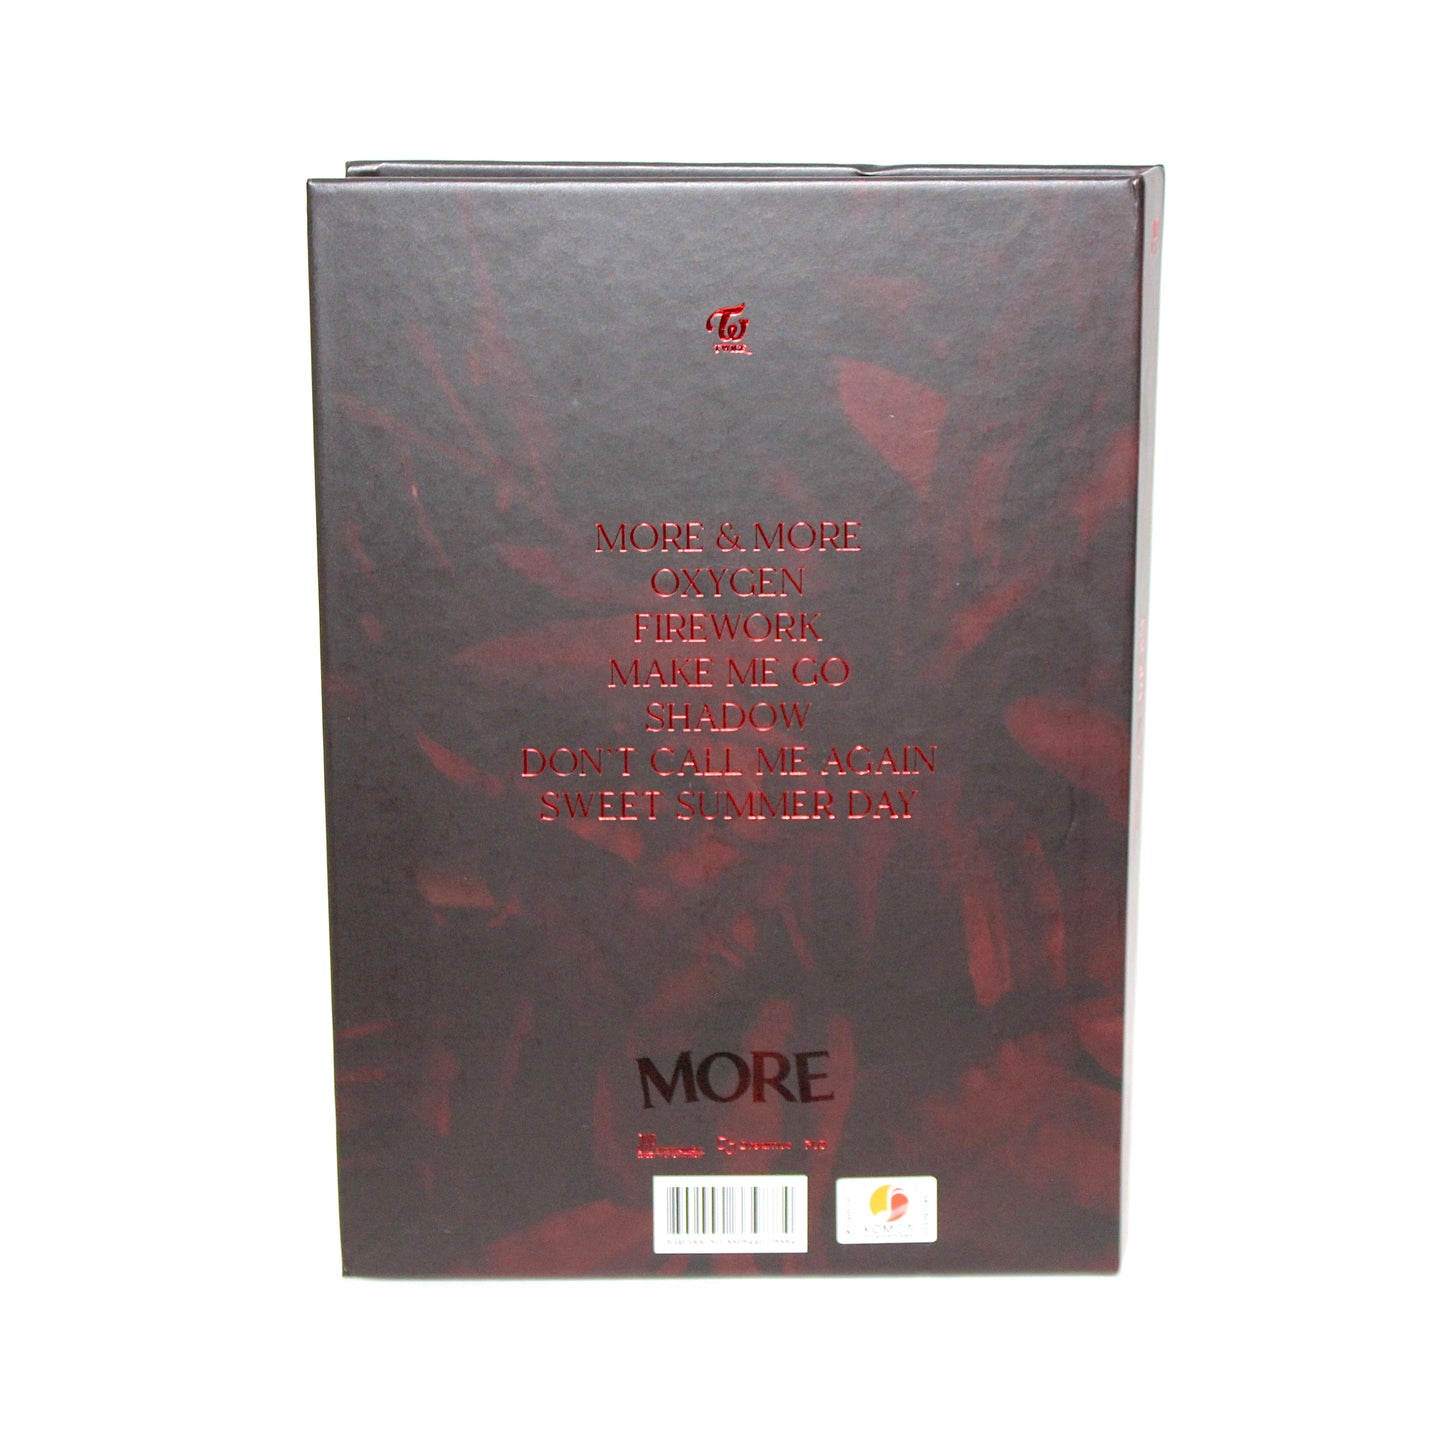 TWICE 9th Mini Album: More & More | A Ver.